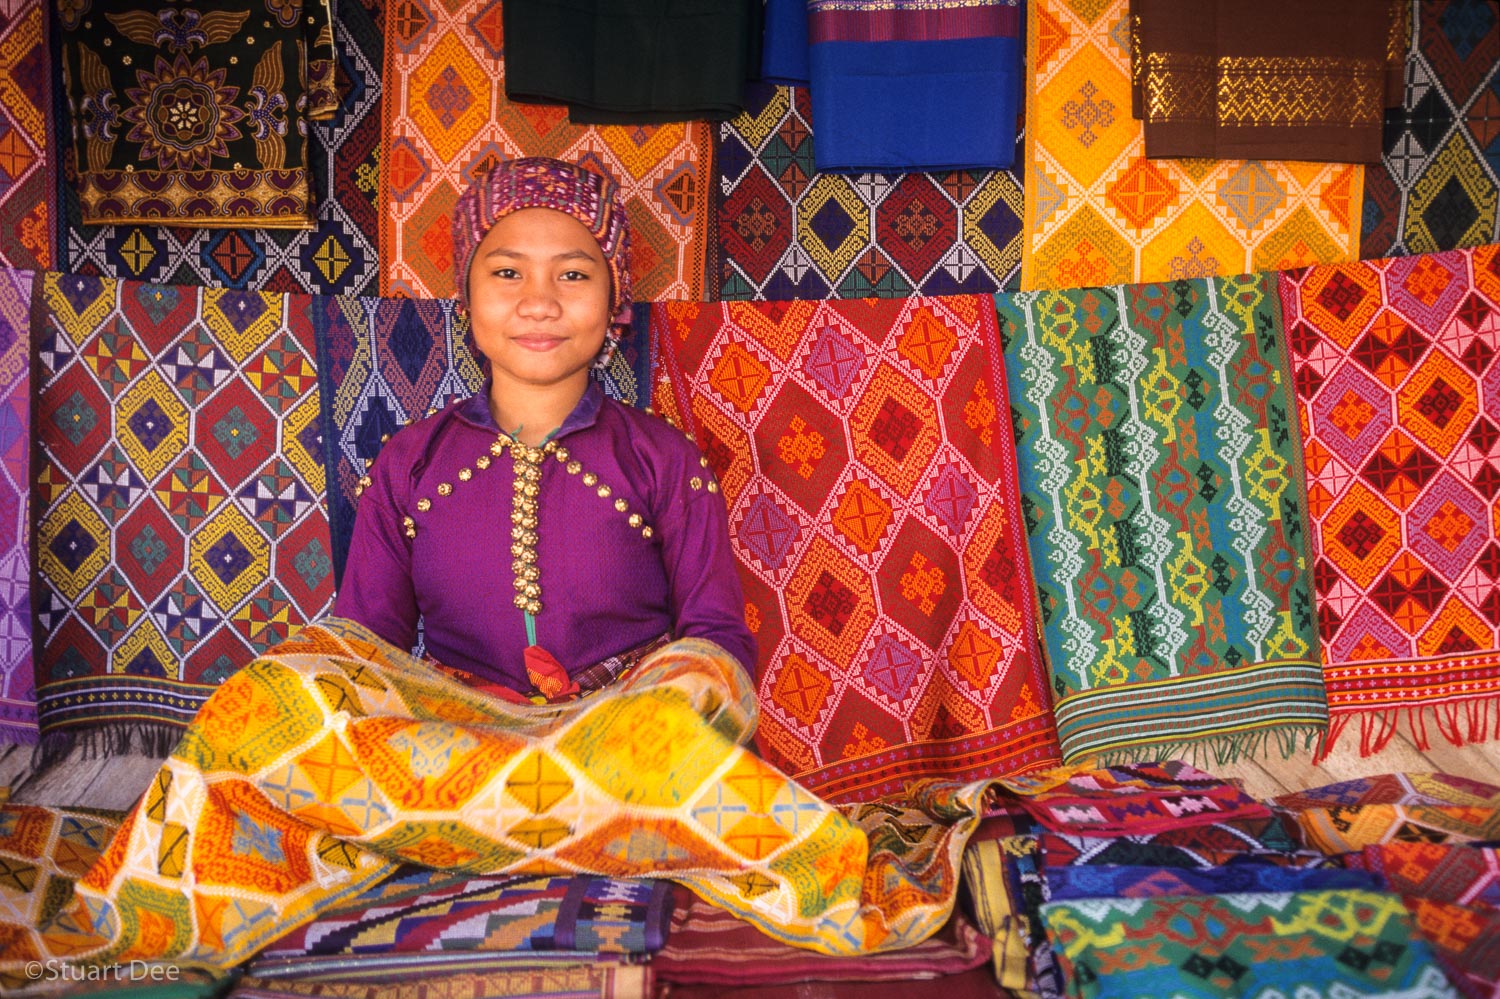  Yakan woman with yakan weave cloths, Zamboanga, Philippines 